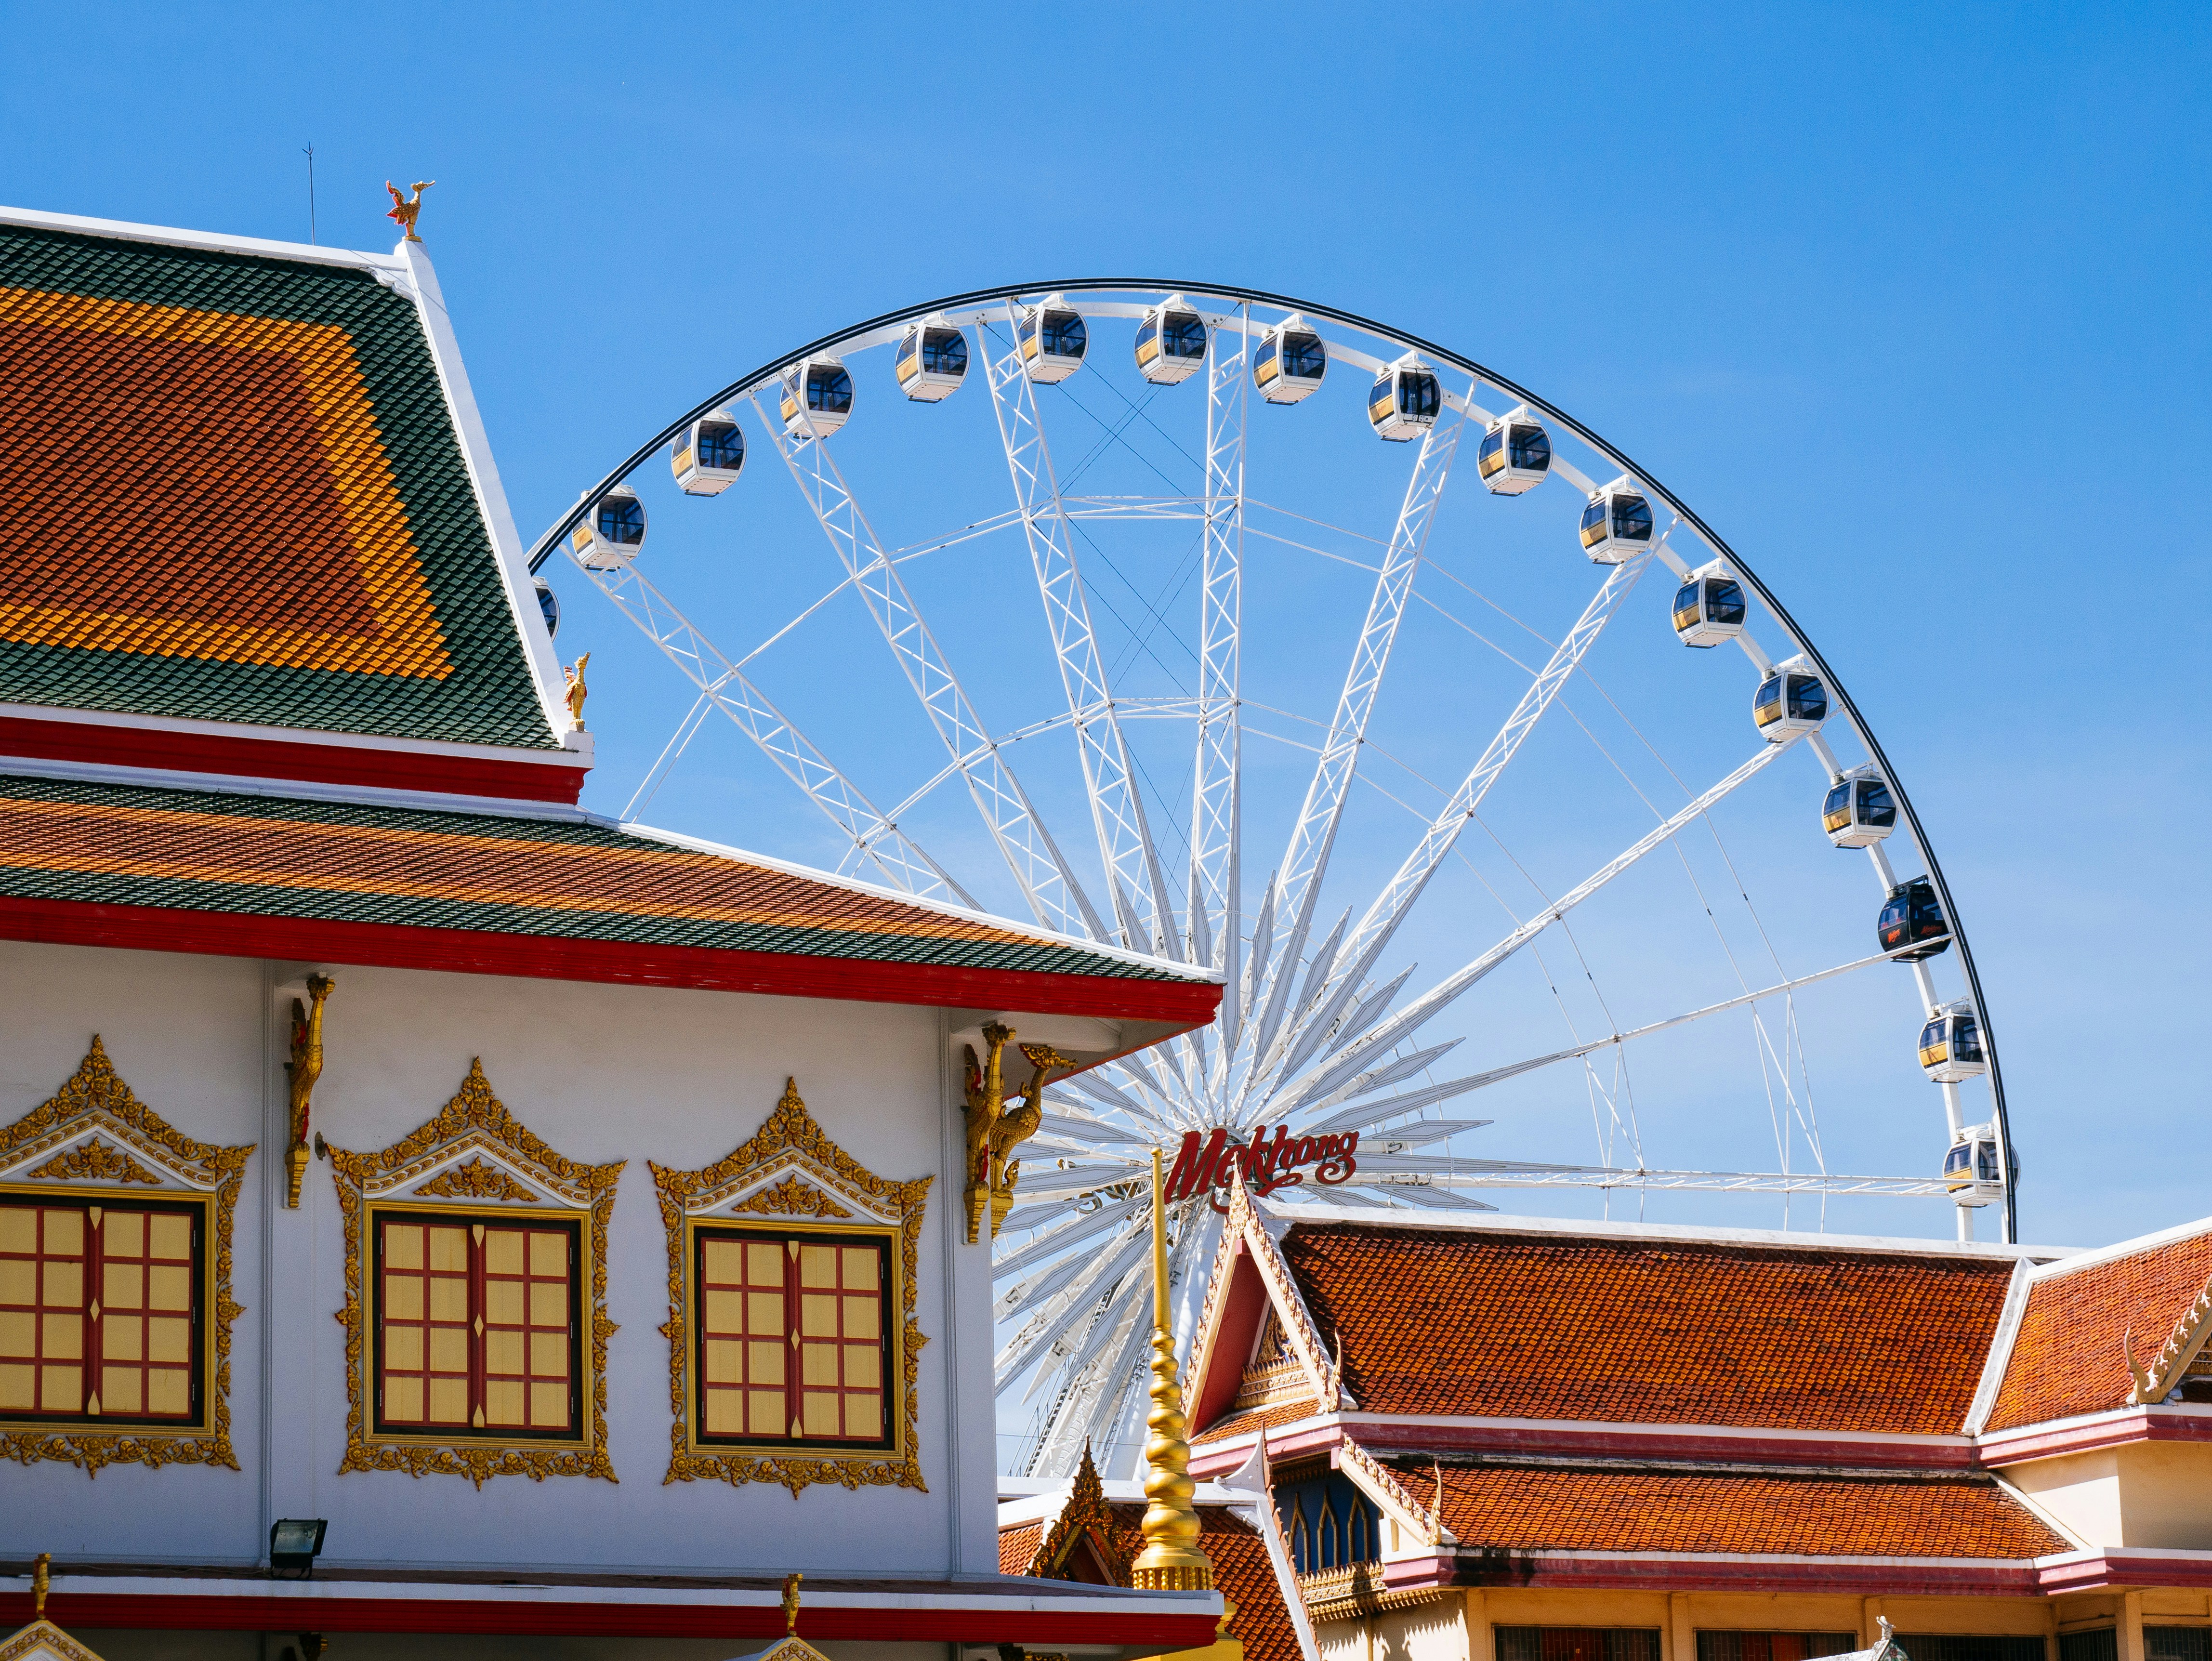 Asiatique Sky ferris wheel in Bangkok, Thailand.